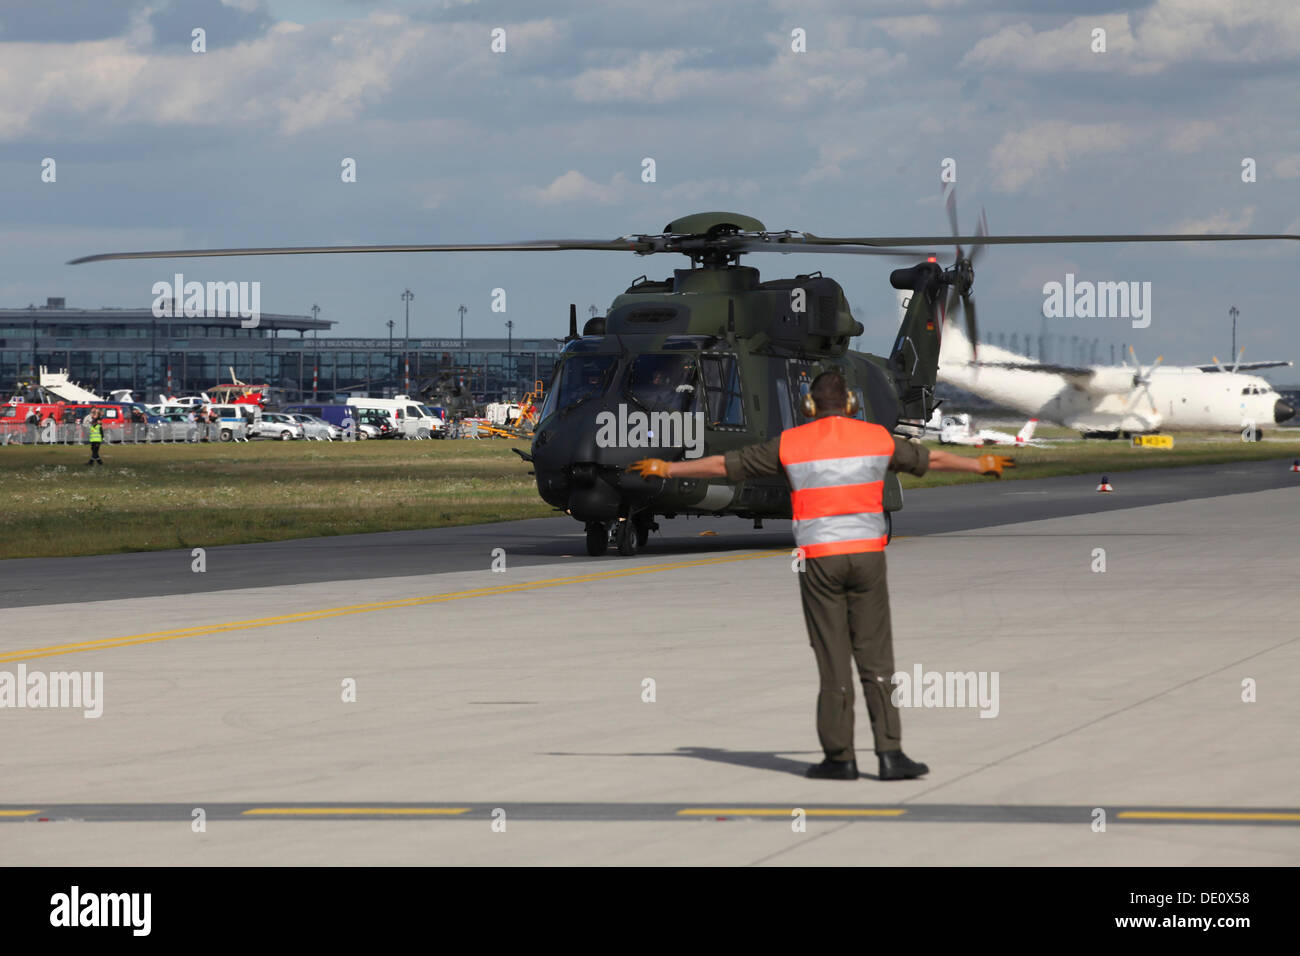 Alemán para el aterrizaje de helicópteros militares, ILA Berlin Air Show, Berlín Foto de stock